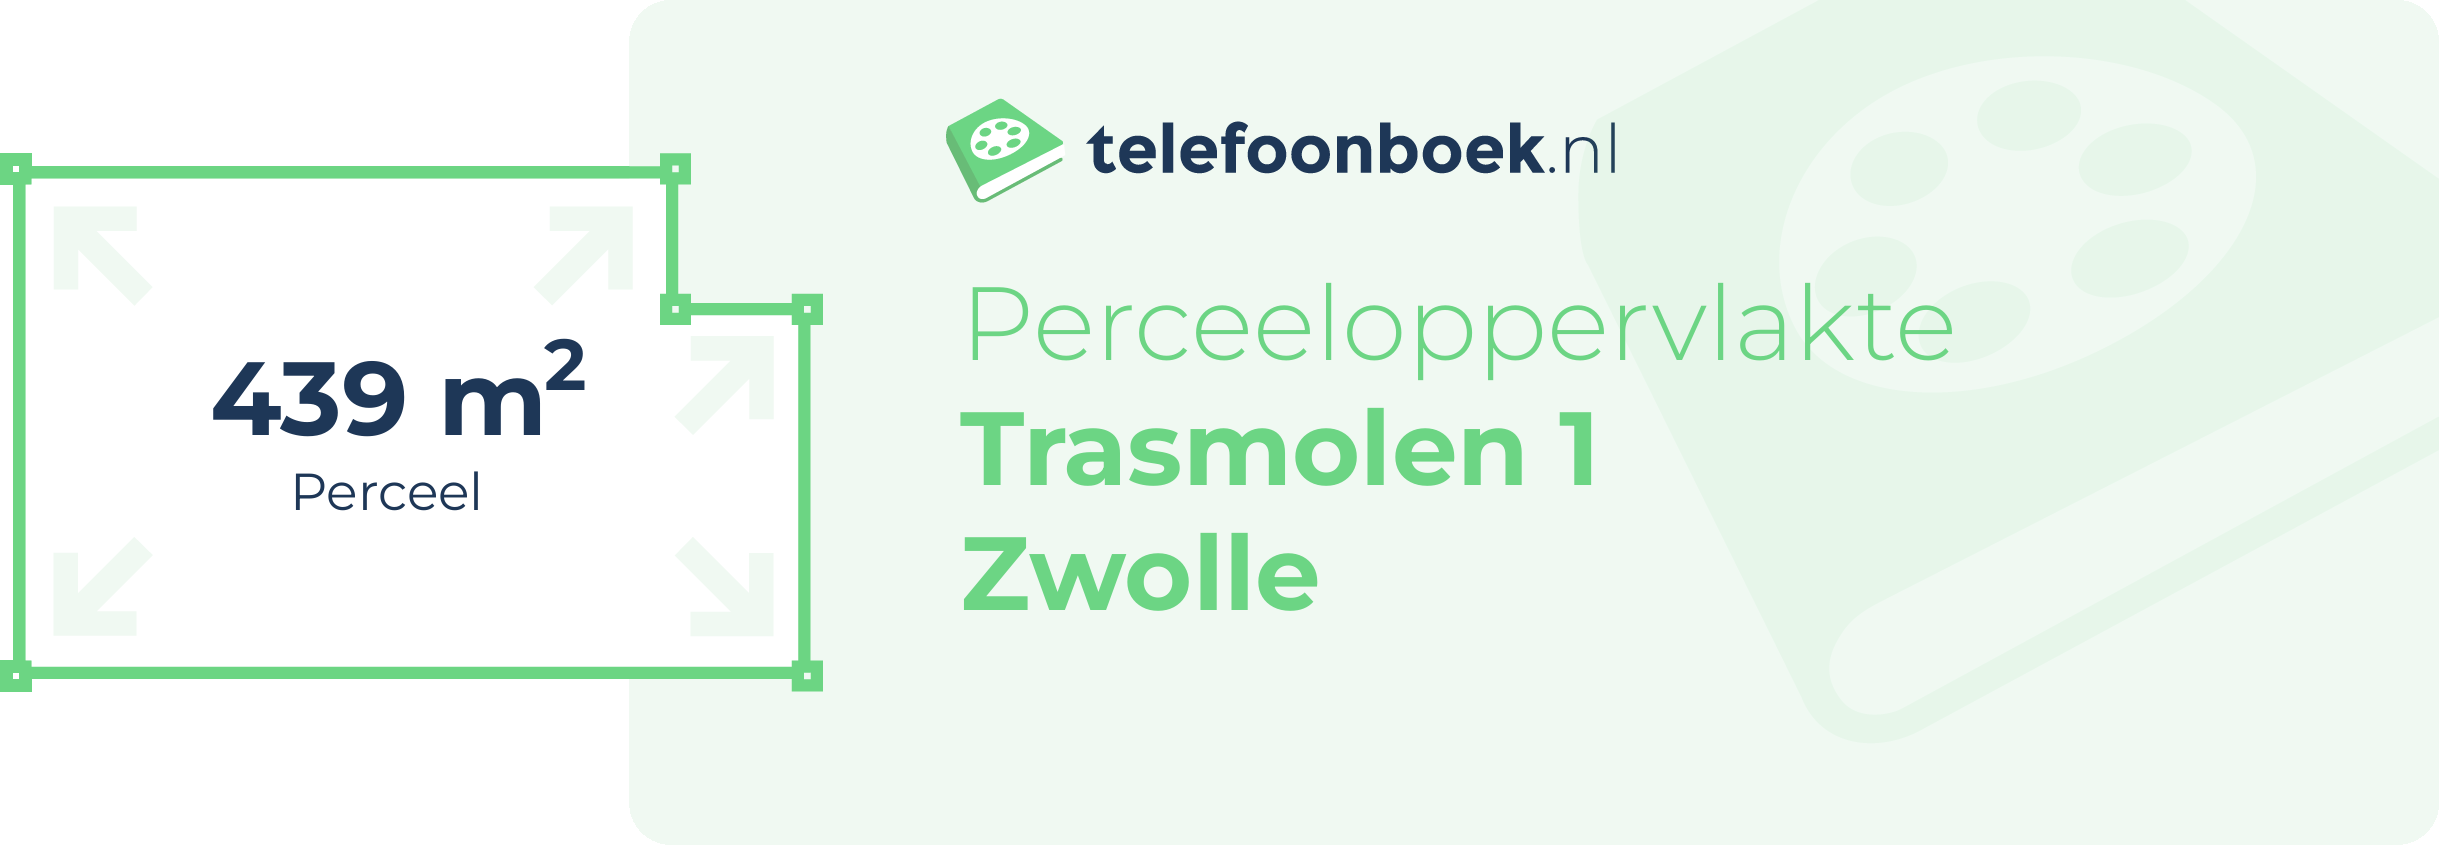 Perceeloppervlakte Trasmolen 1 Zwolle